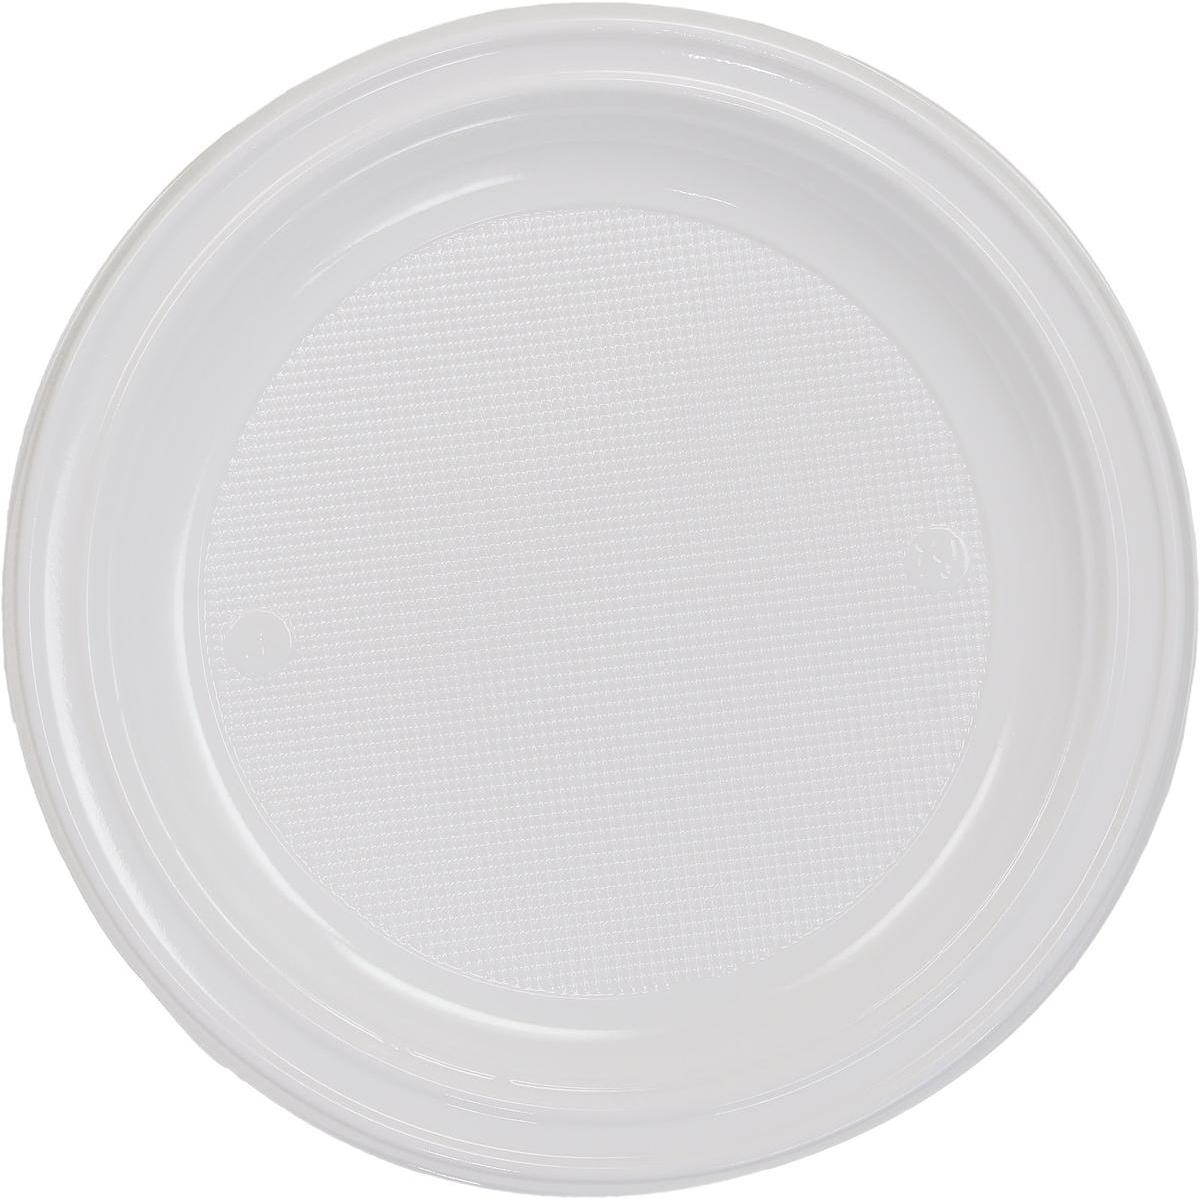 Assiette blanche jetable biodégradable Ø 22 cm (50 pièces